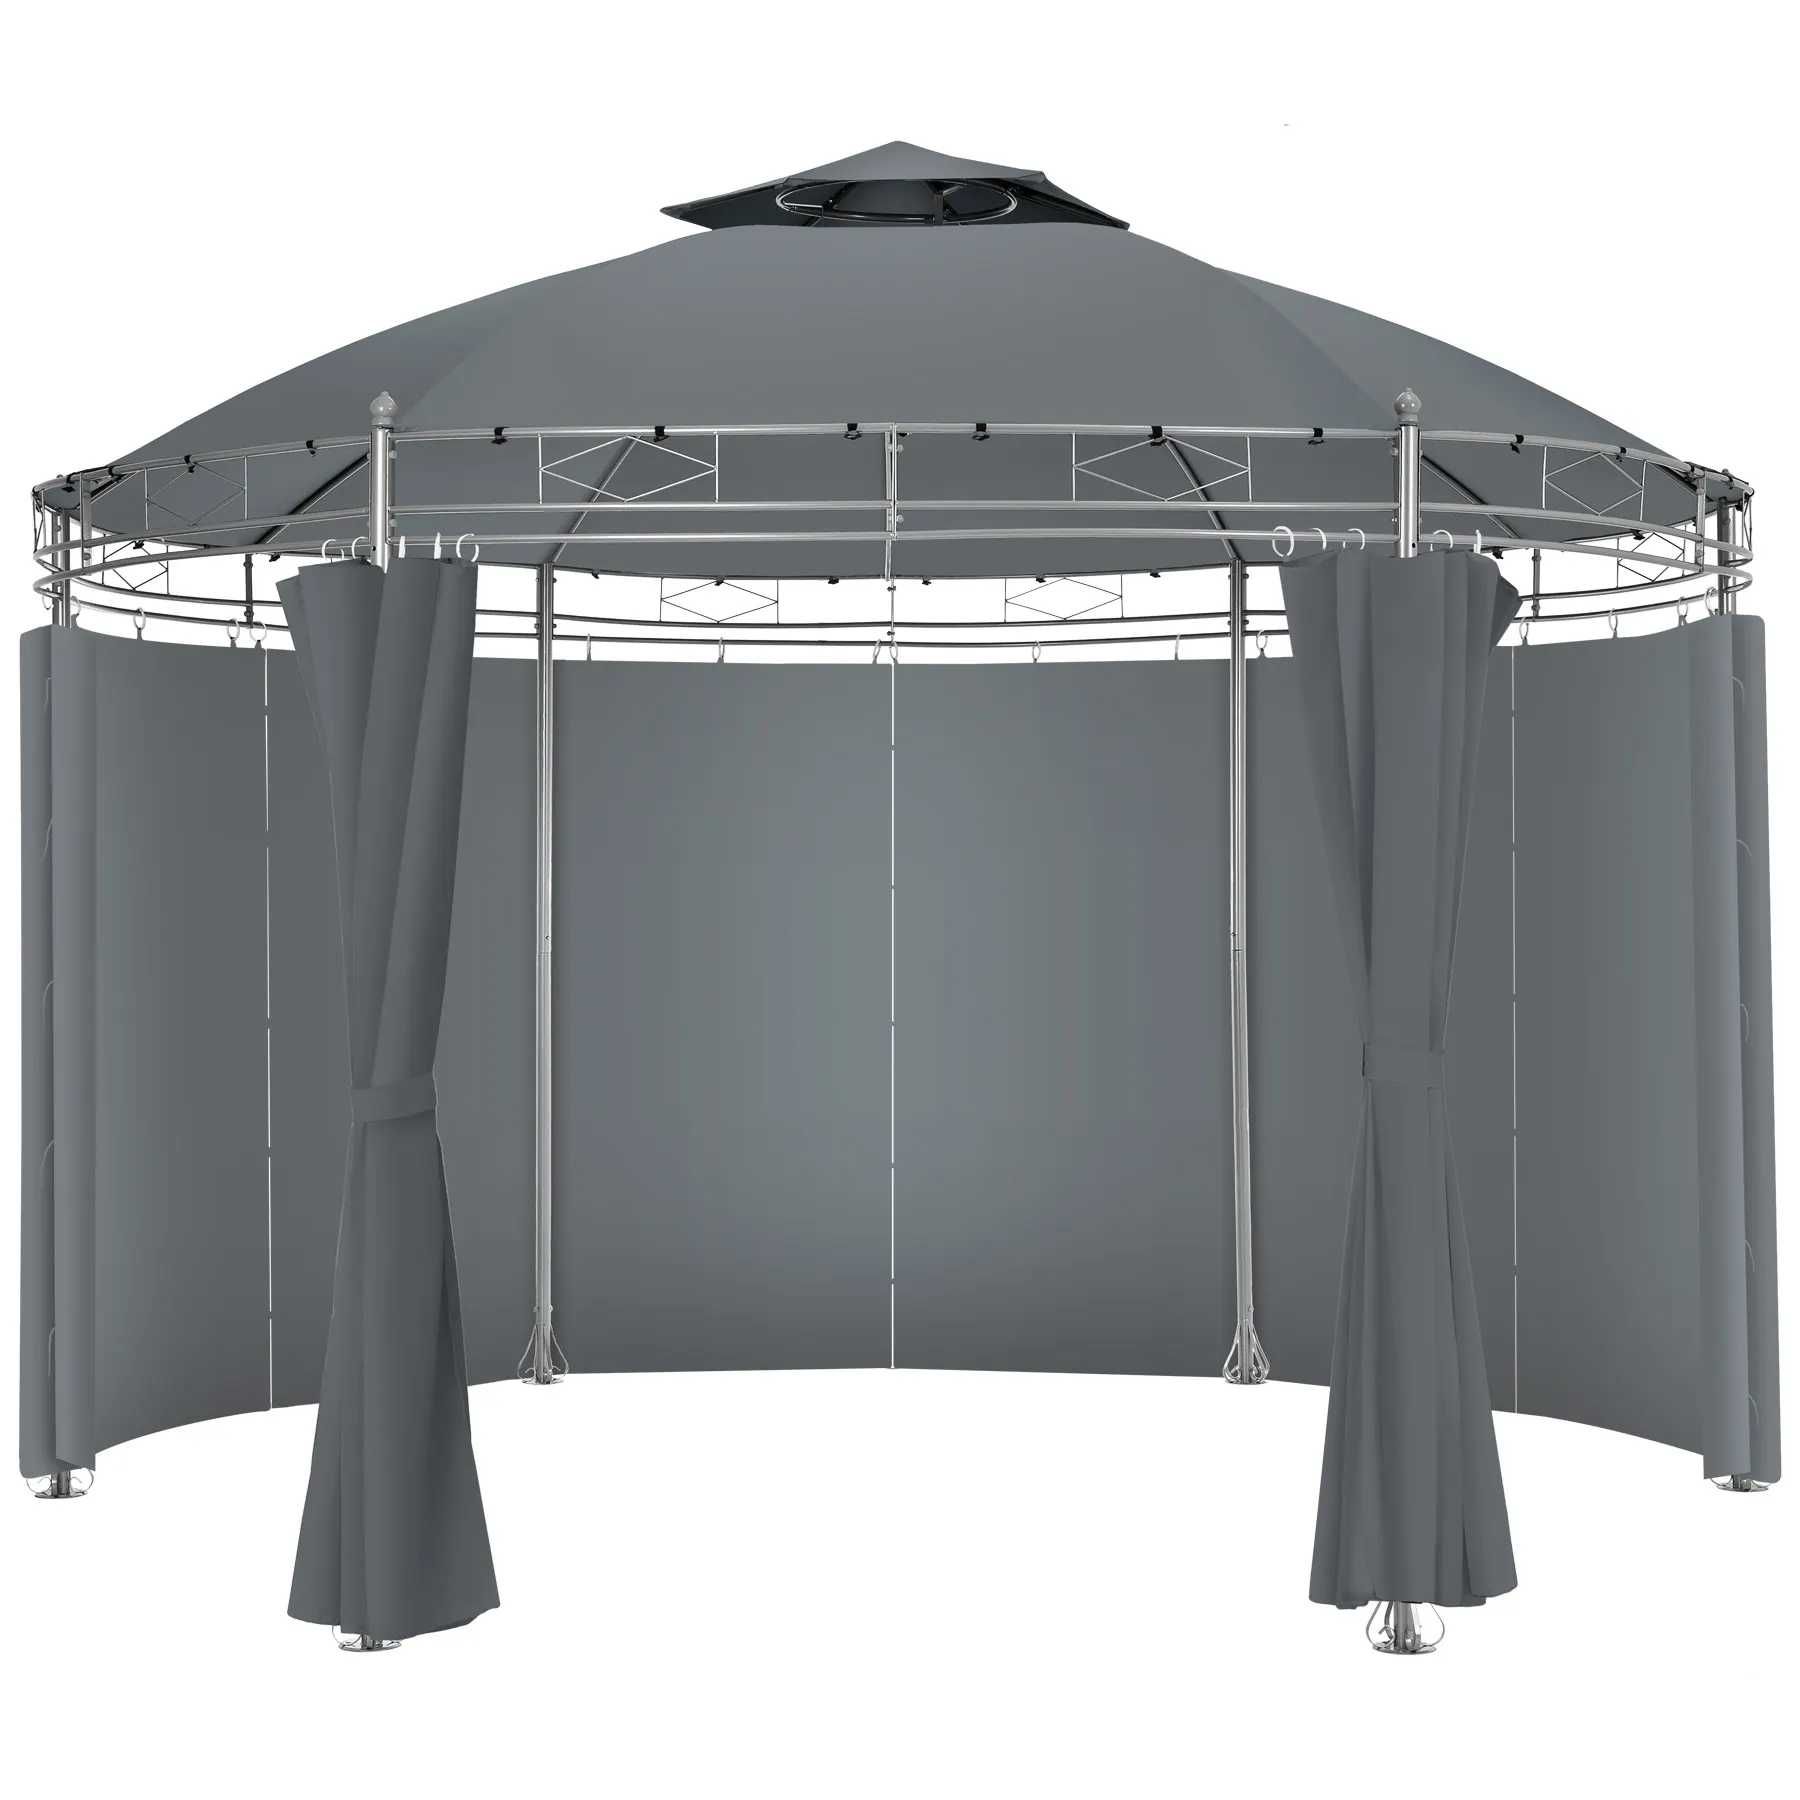 Okrągły pawilon namiot ogrodowy Luxus Ø3,5m Siana antracyt